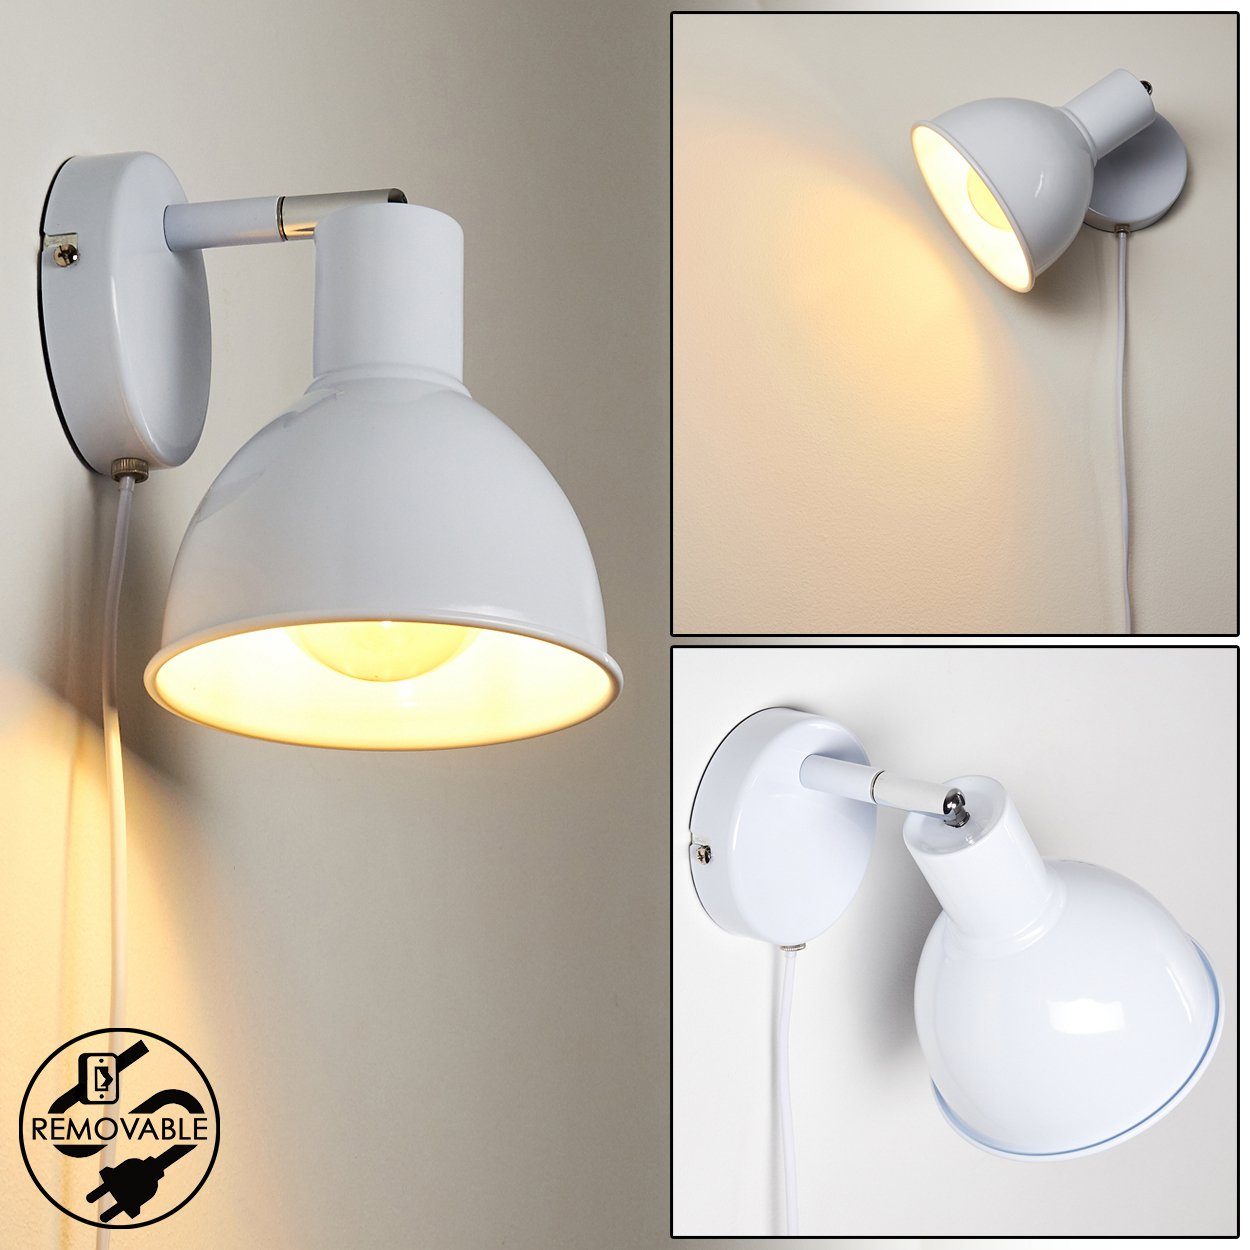 Weiß, Metall Wandleuchte Lampenschirm, E27, mit verstellbarer Ausschalter aus Leuchtmittel, und Wandlampe ohne & hofstein in chrom Retro-Design »Bier« An-